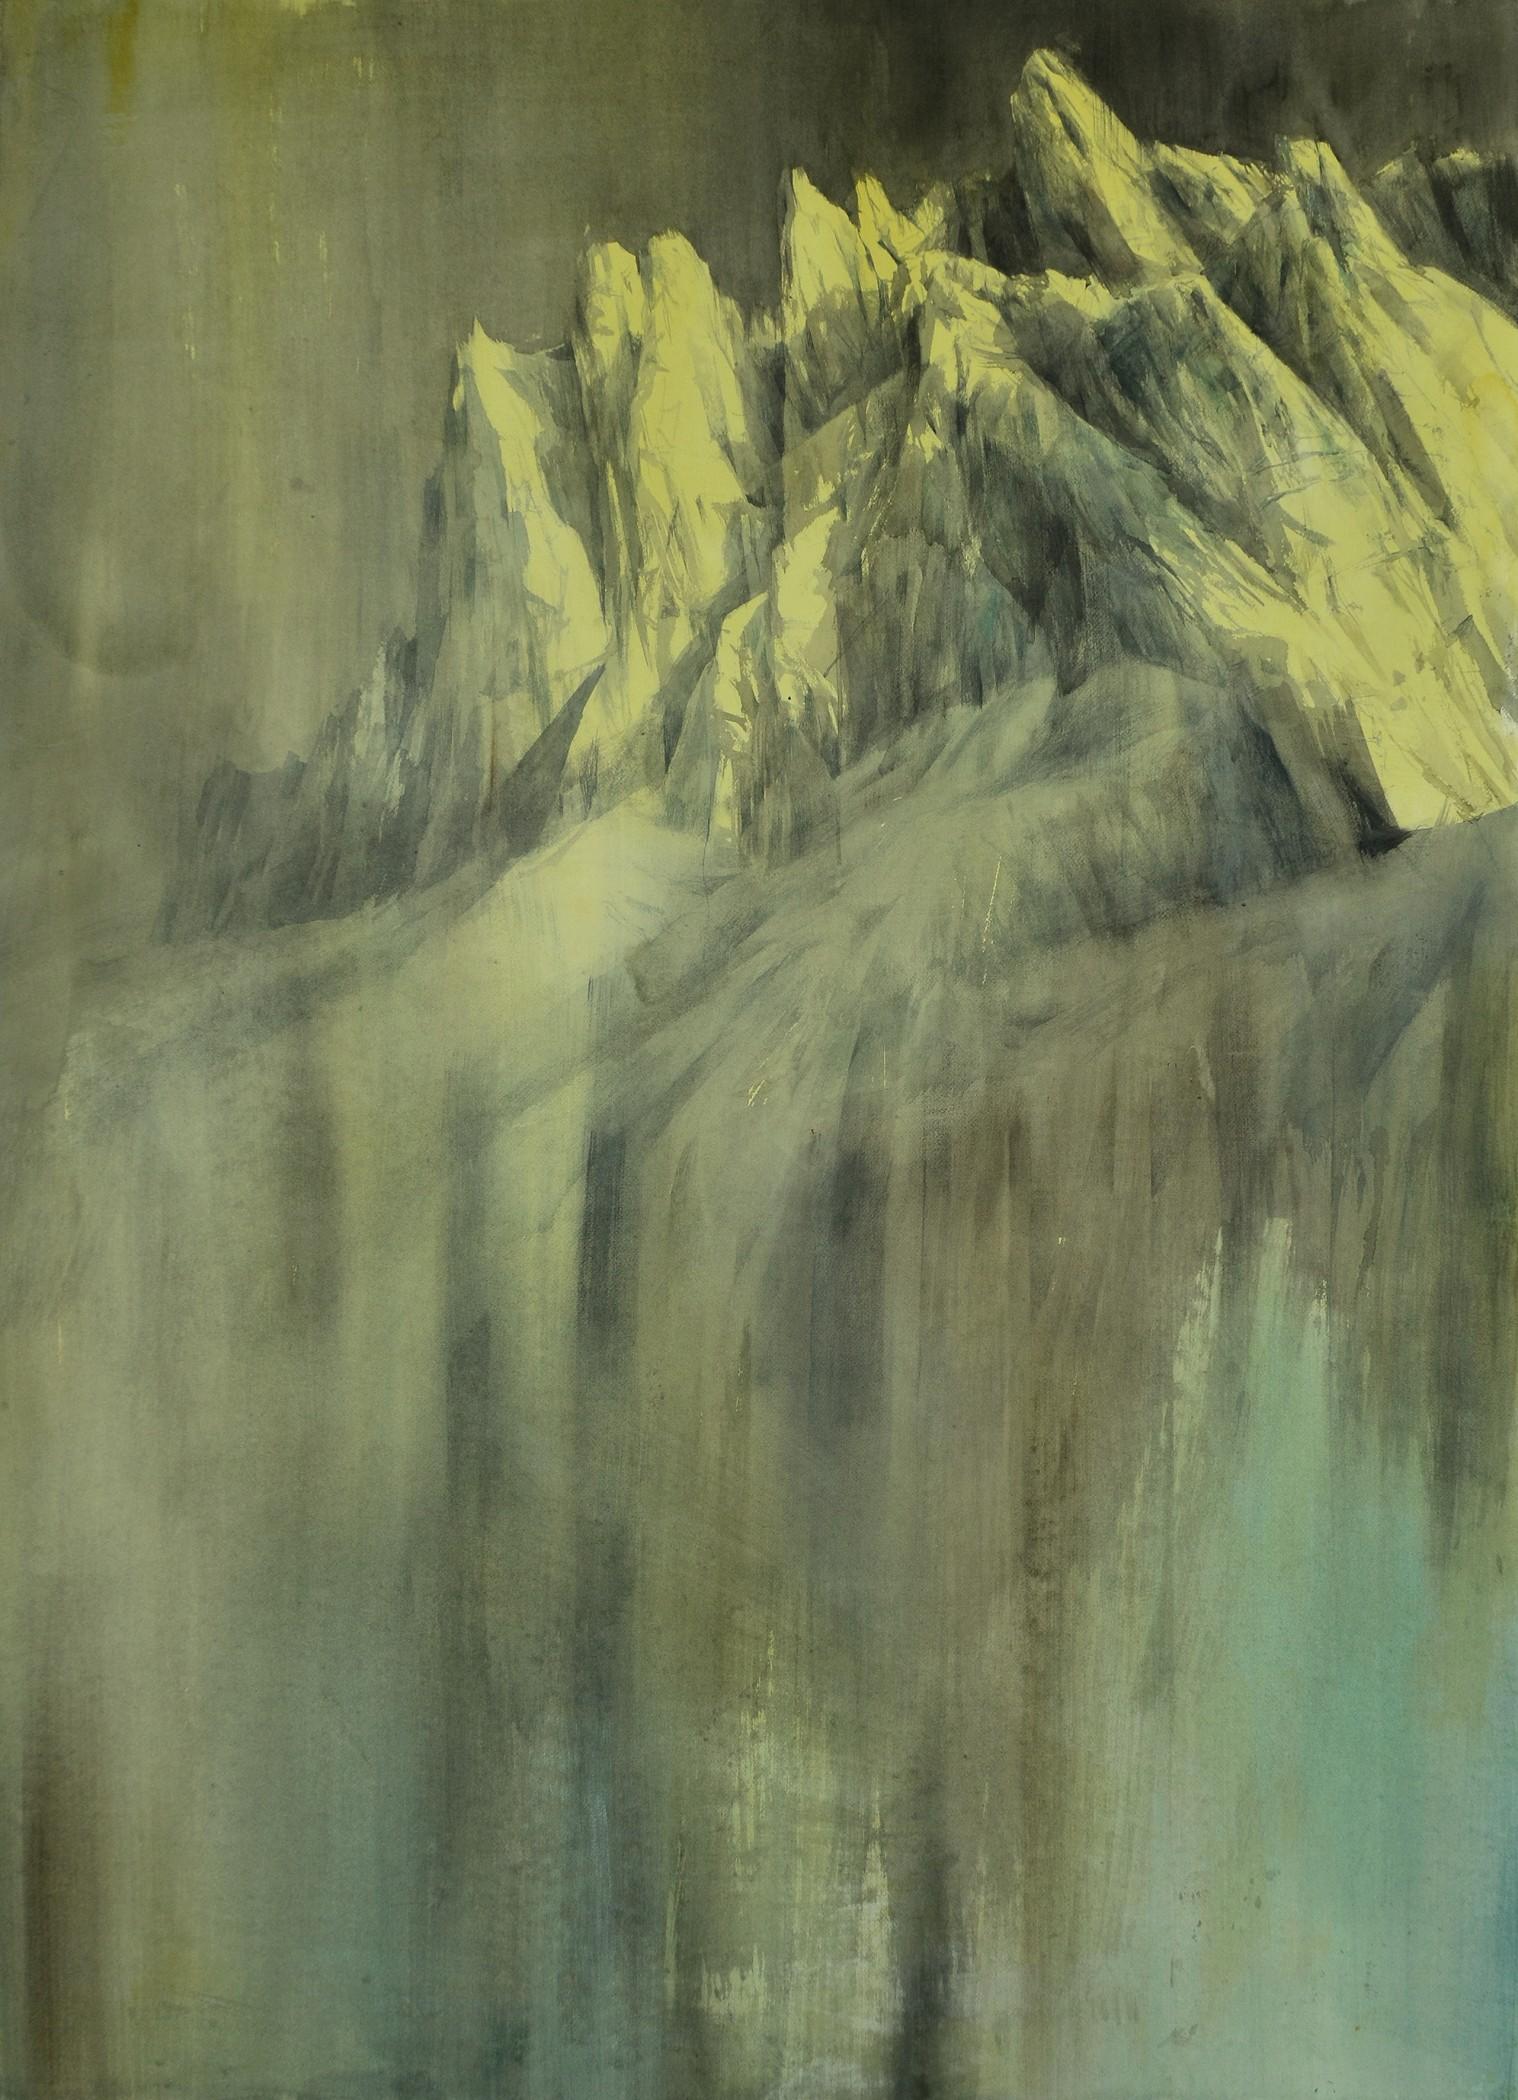 Cima Canali #2, 2014

Aquarelle sur papier sur toile inch 62.9 x 45.2

Silvia De Bastiani est née à Feltre (nord de l'Italie) en 1981. Actuellement, elle vit et travaille dans la région des Dolomites.  En 2004, elle a obtenu sa licence en peinture à